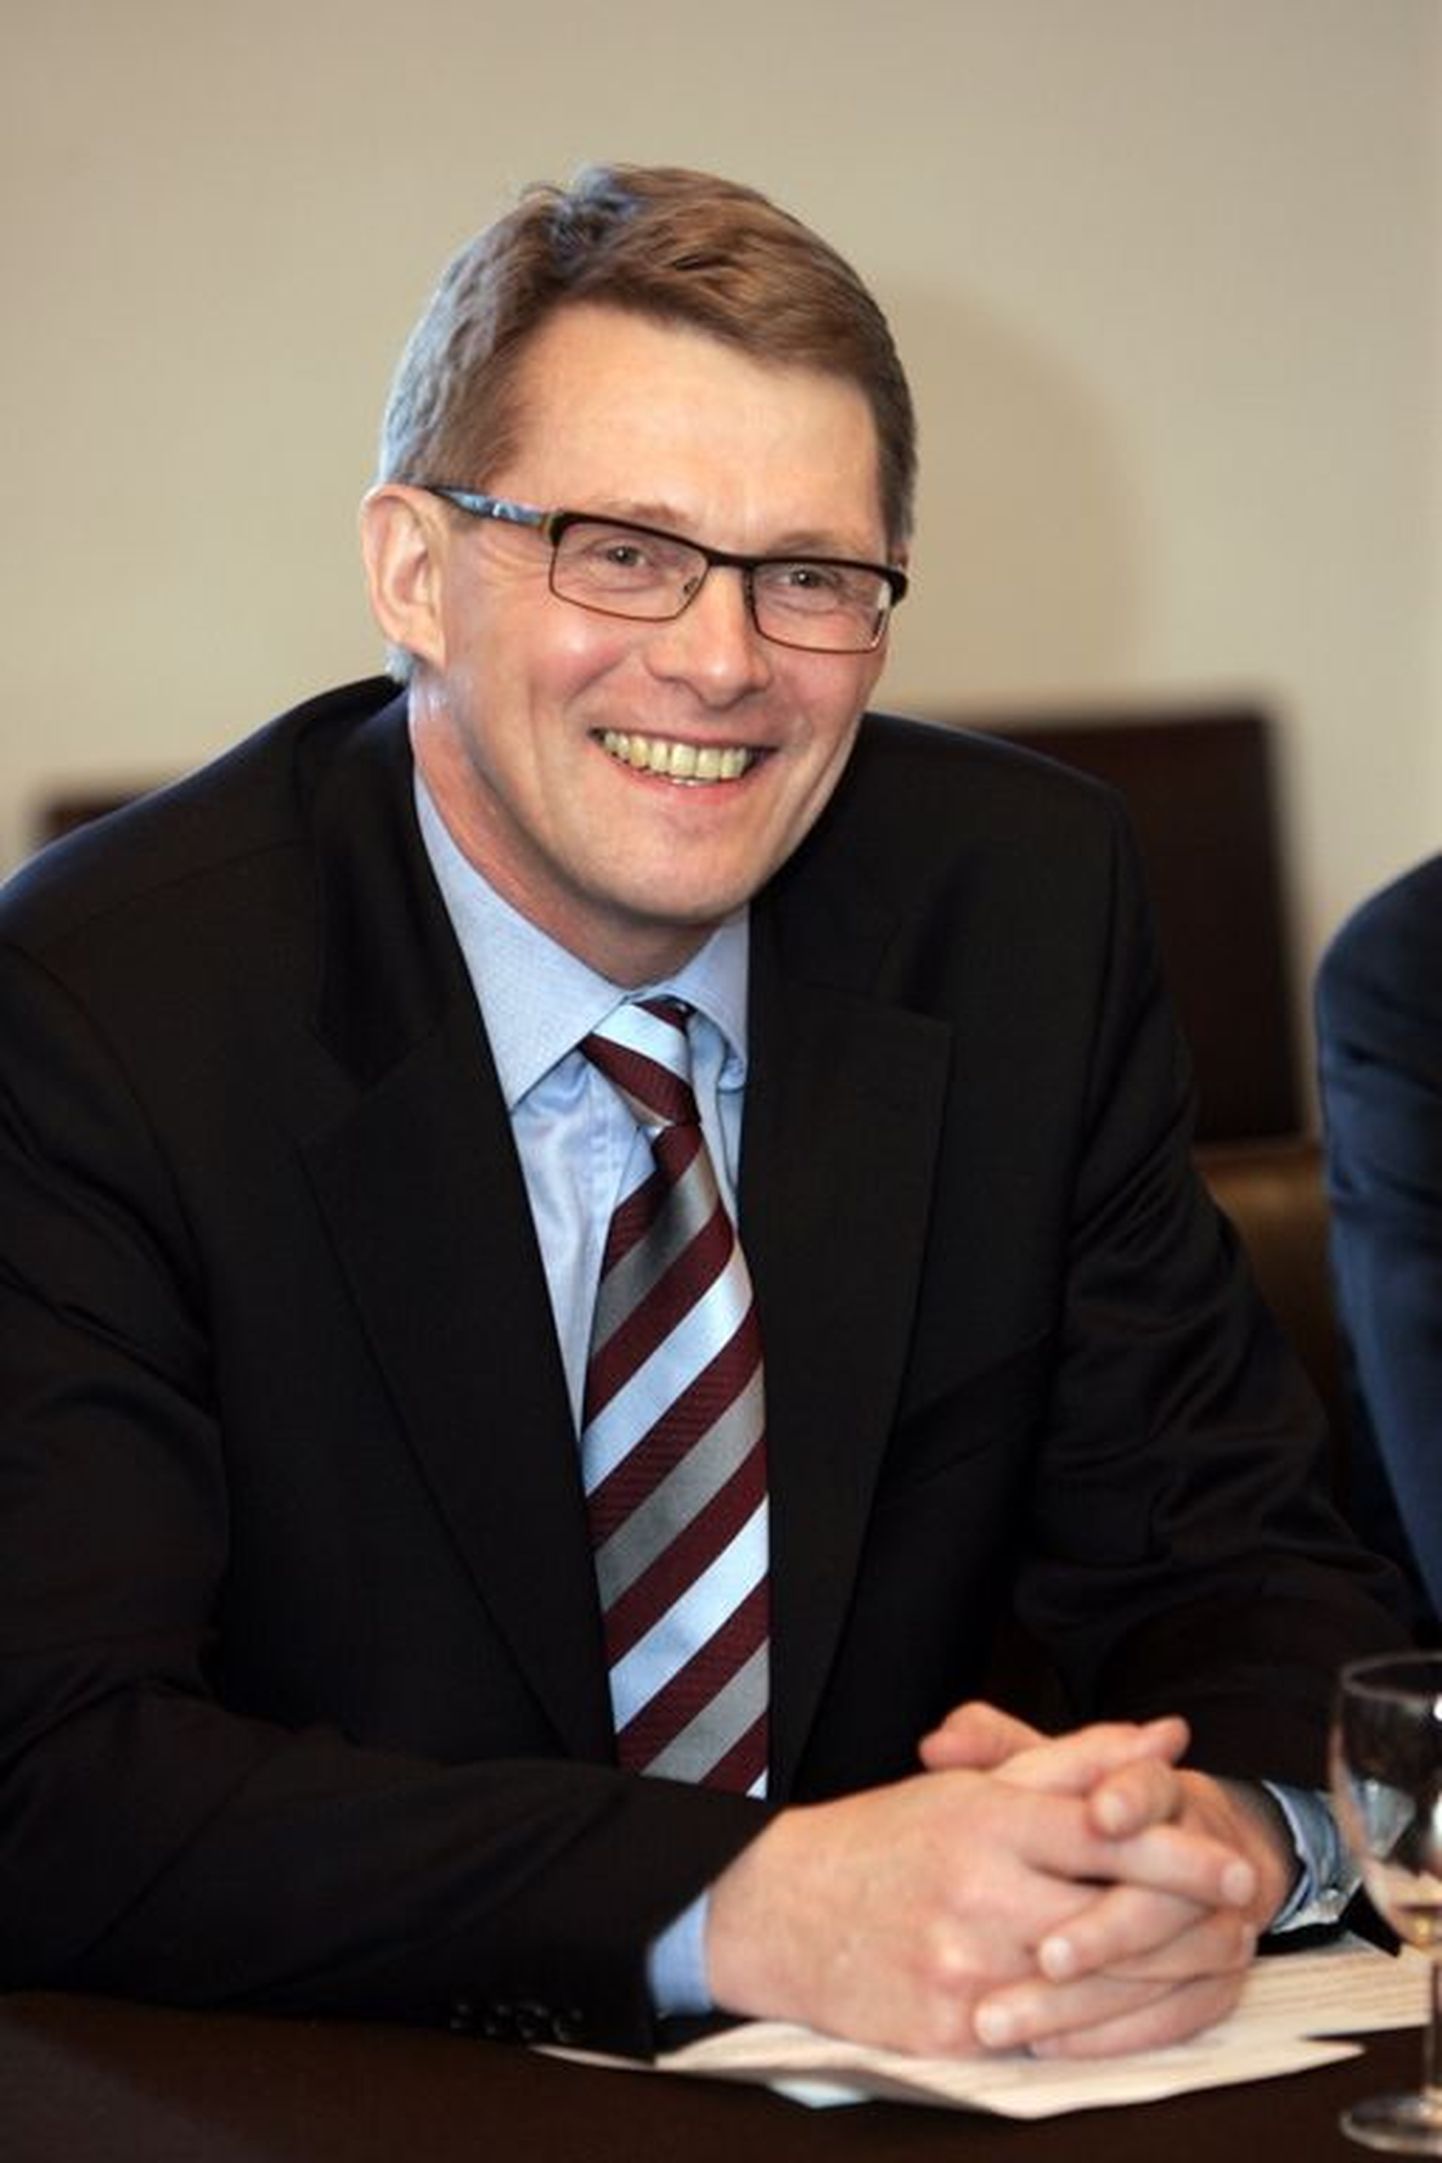 Soome peaminister Matti Vanhanen.